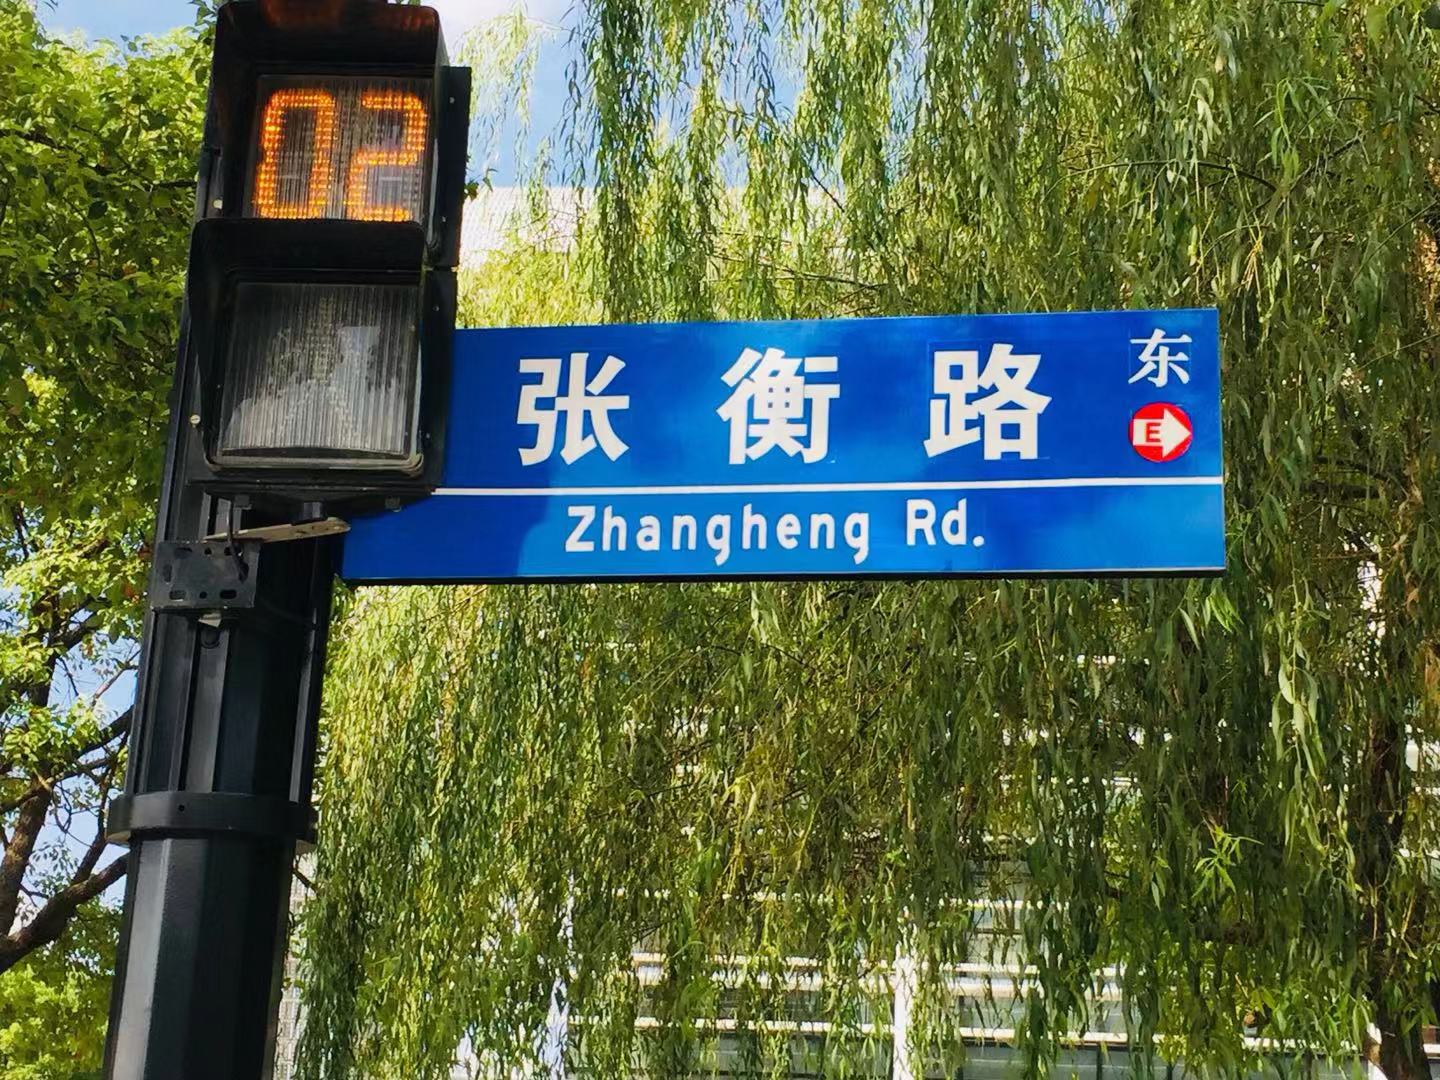 我居住的地方叫张江。张江的路大都以科学家...